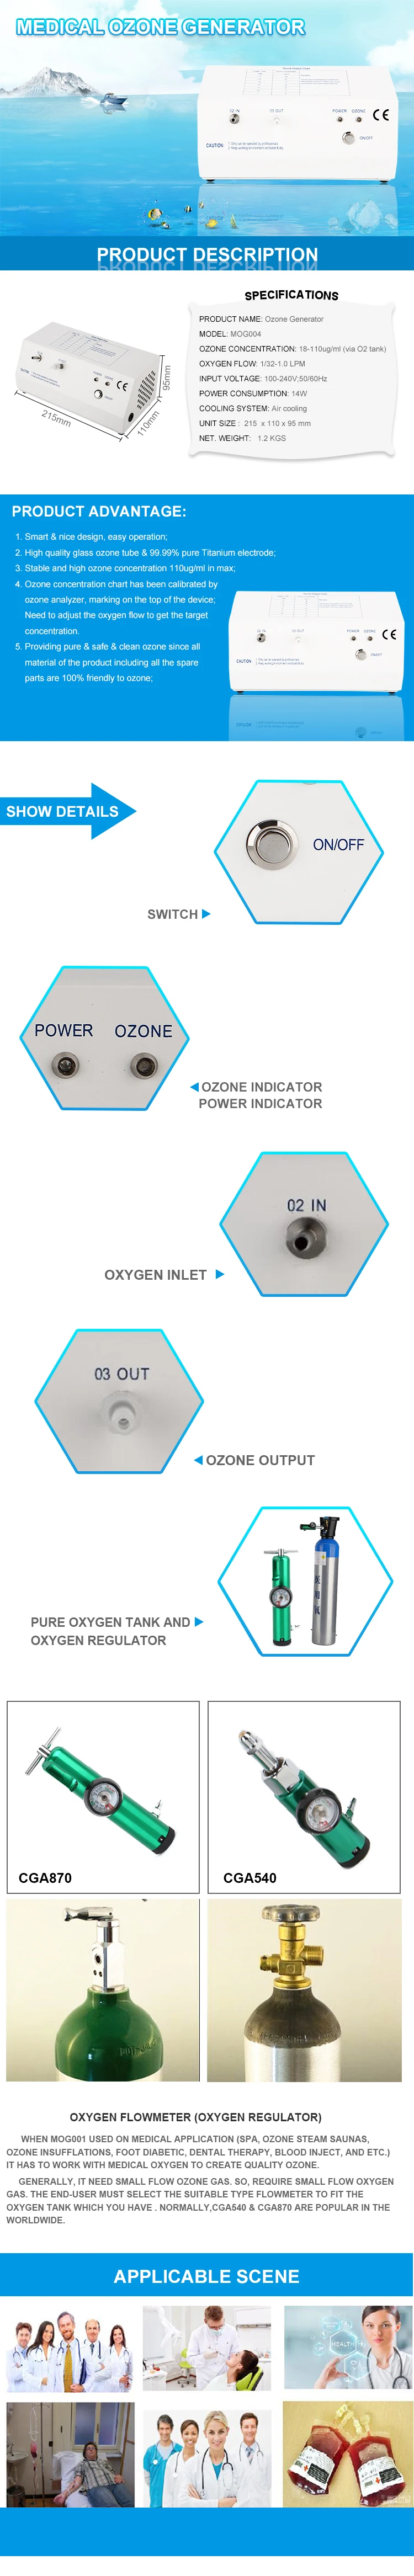 18-110ug/ml MOG004 генератор озона медицинская терапия(кислородный регулятор опционально